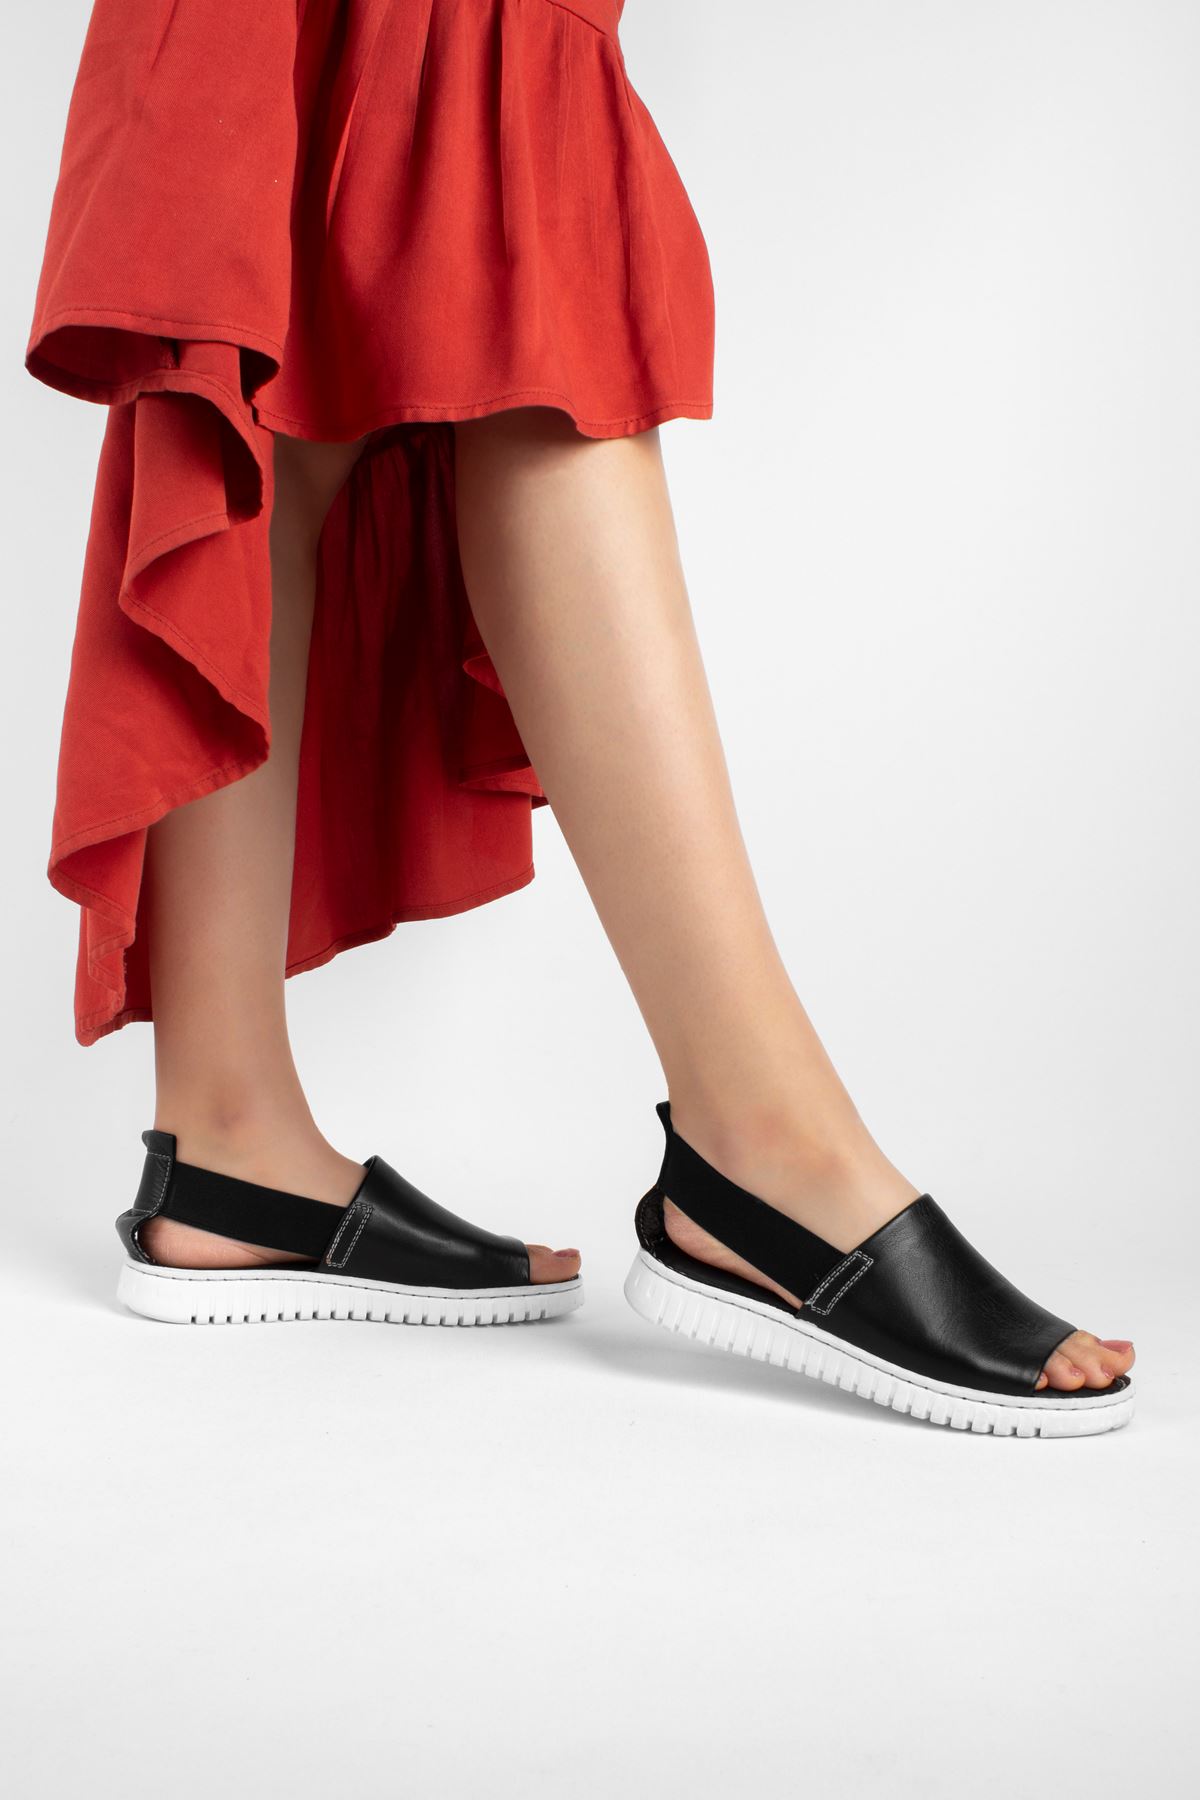 Pollen Hakiki Deri Kadın Sandalet Düz Model-siyah